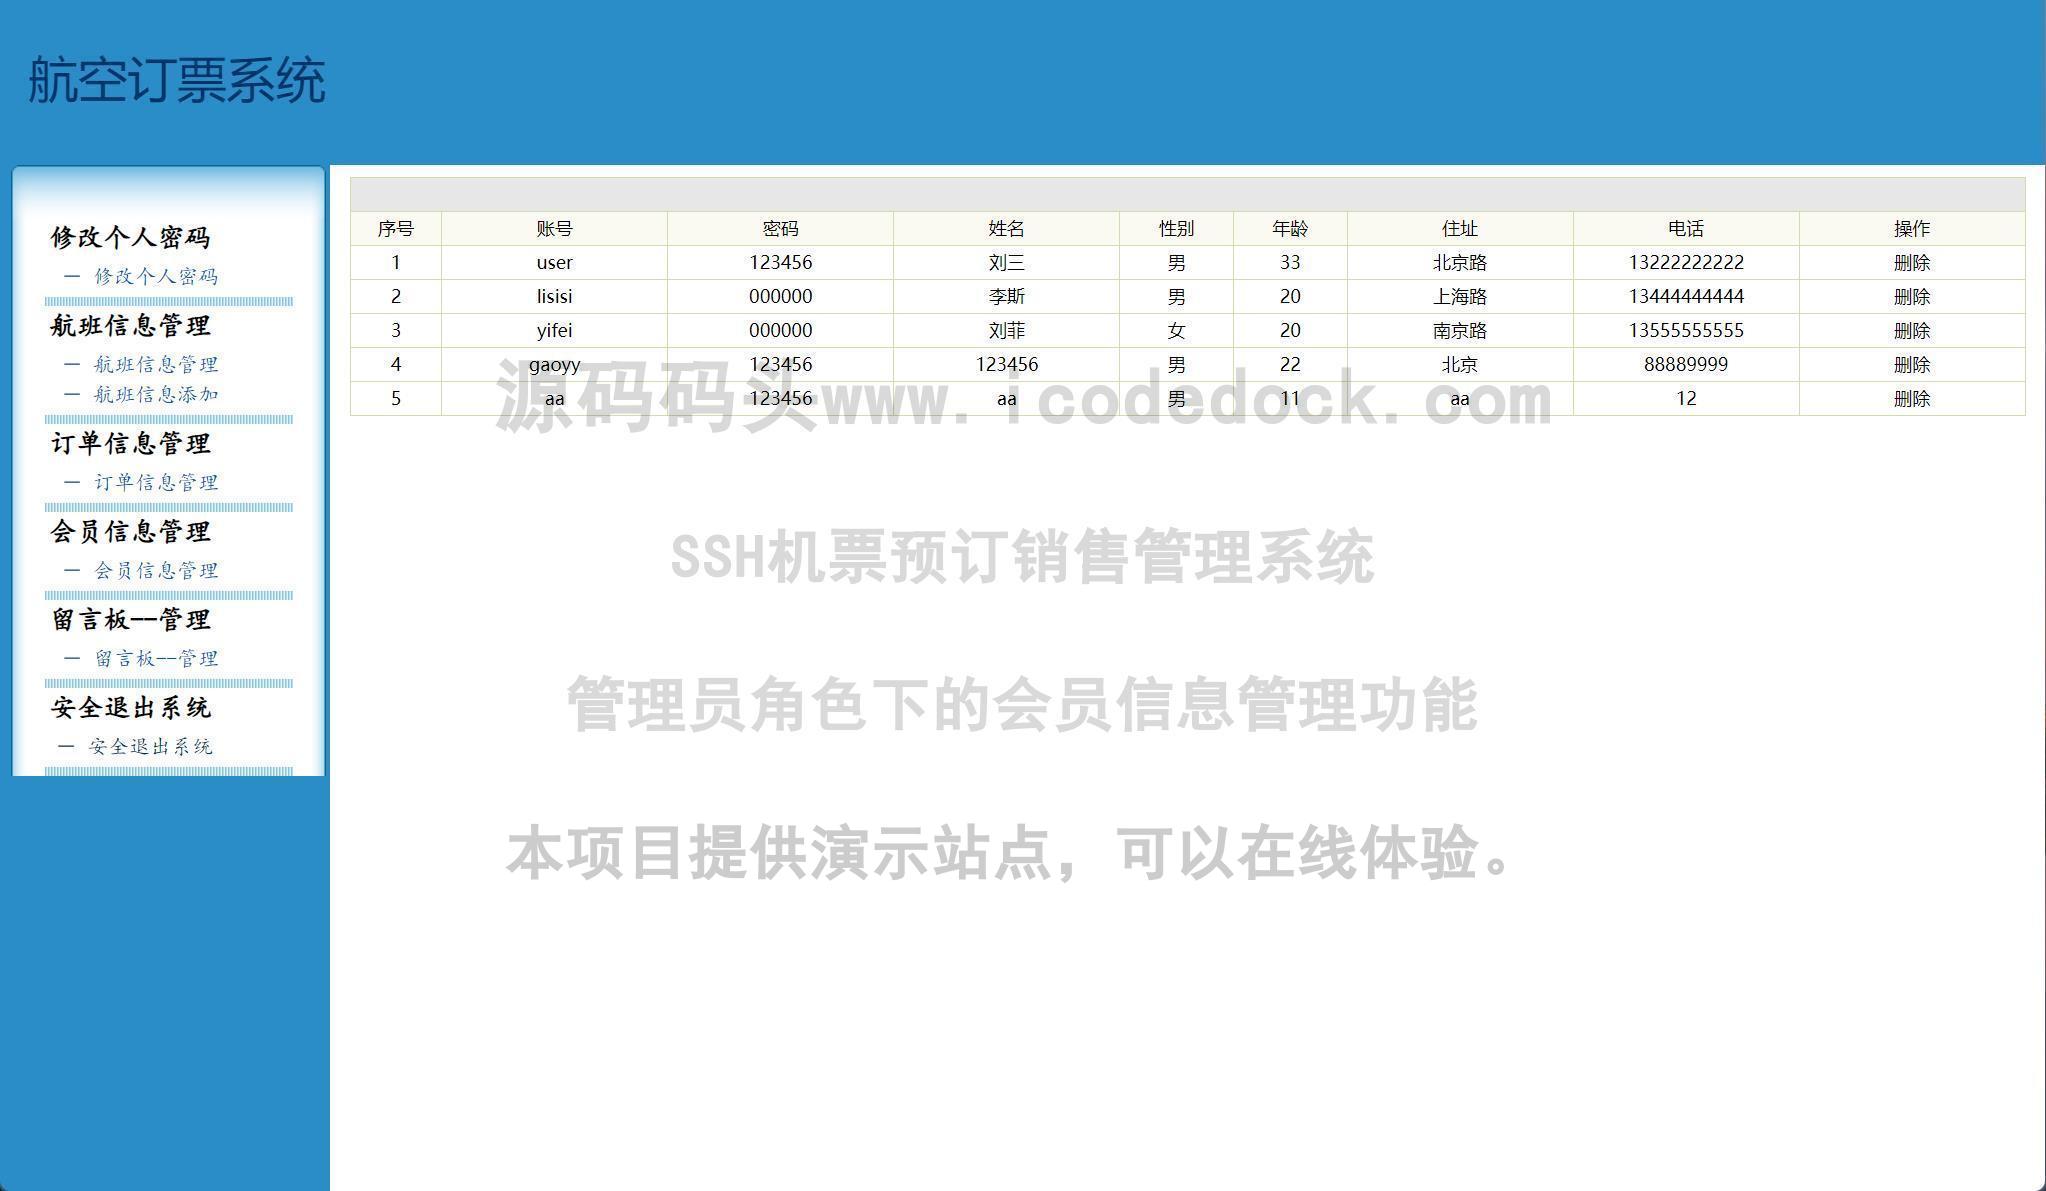 源码码头-SSH机票预订销售管理系统-管理员角色-会员信息管理